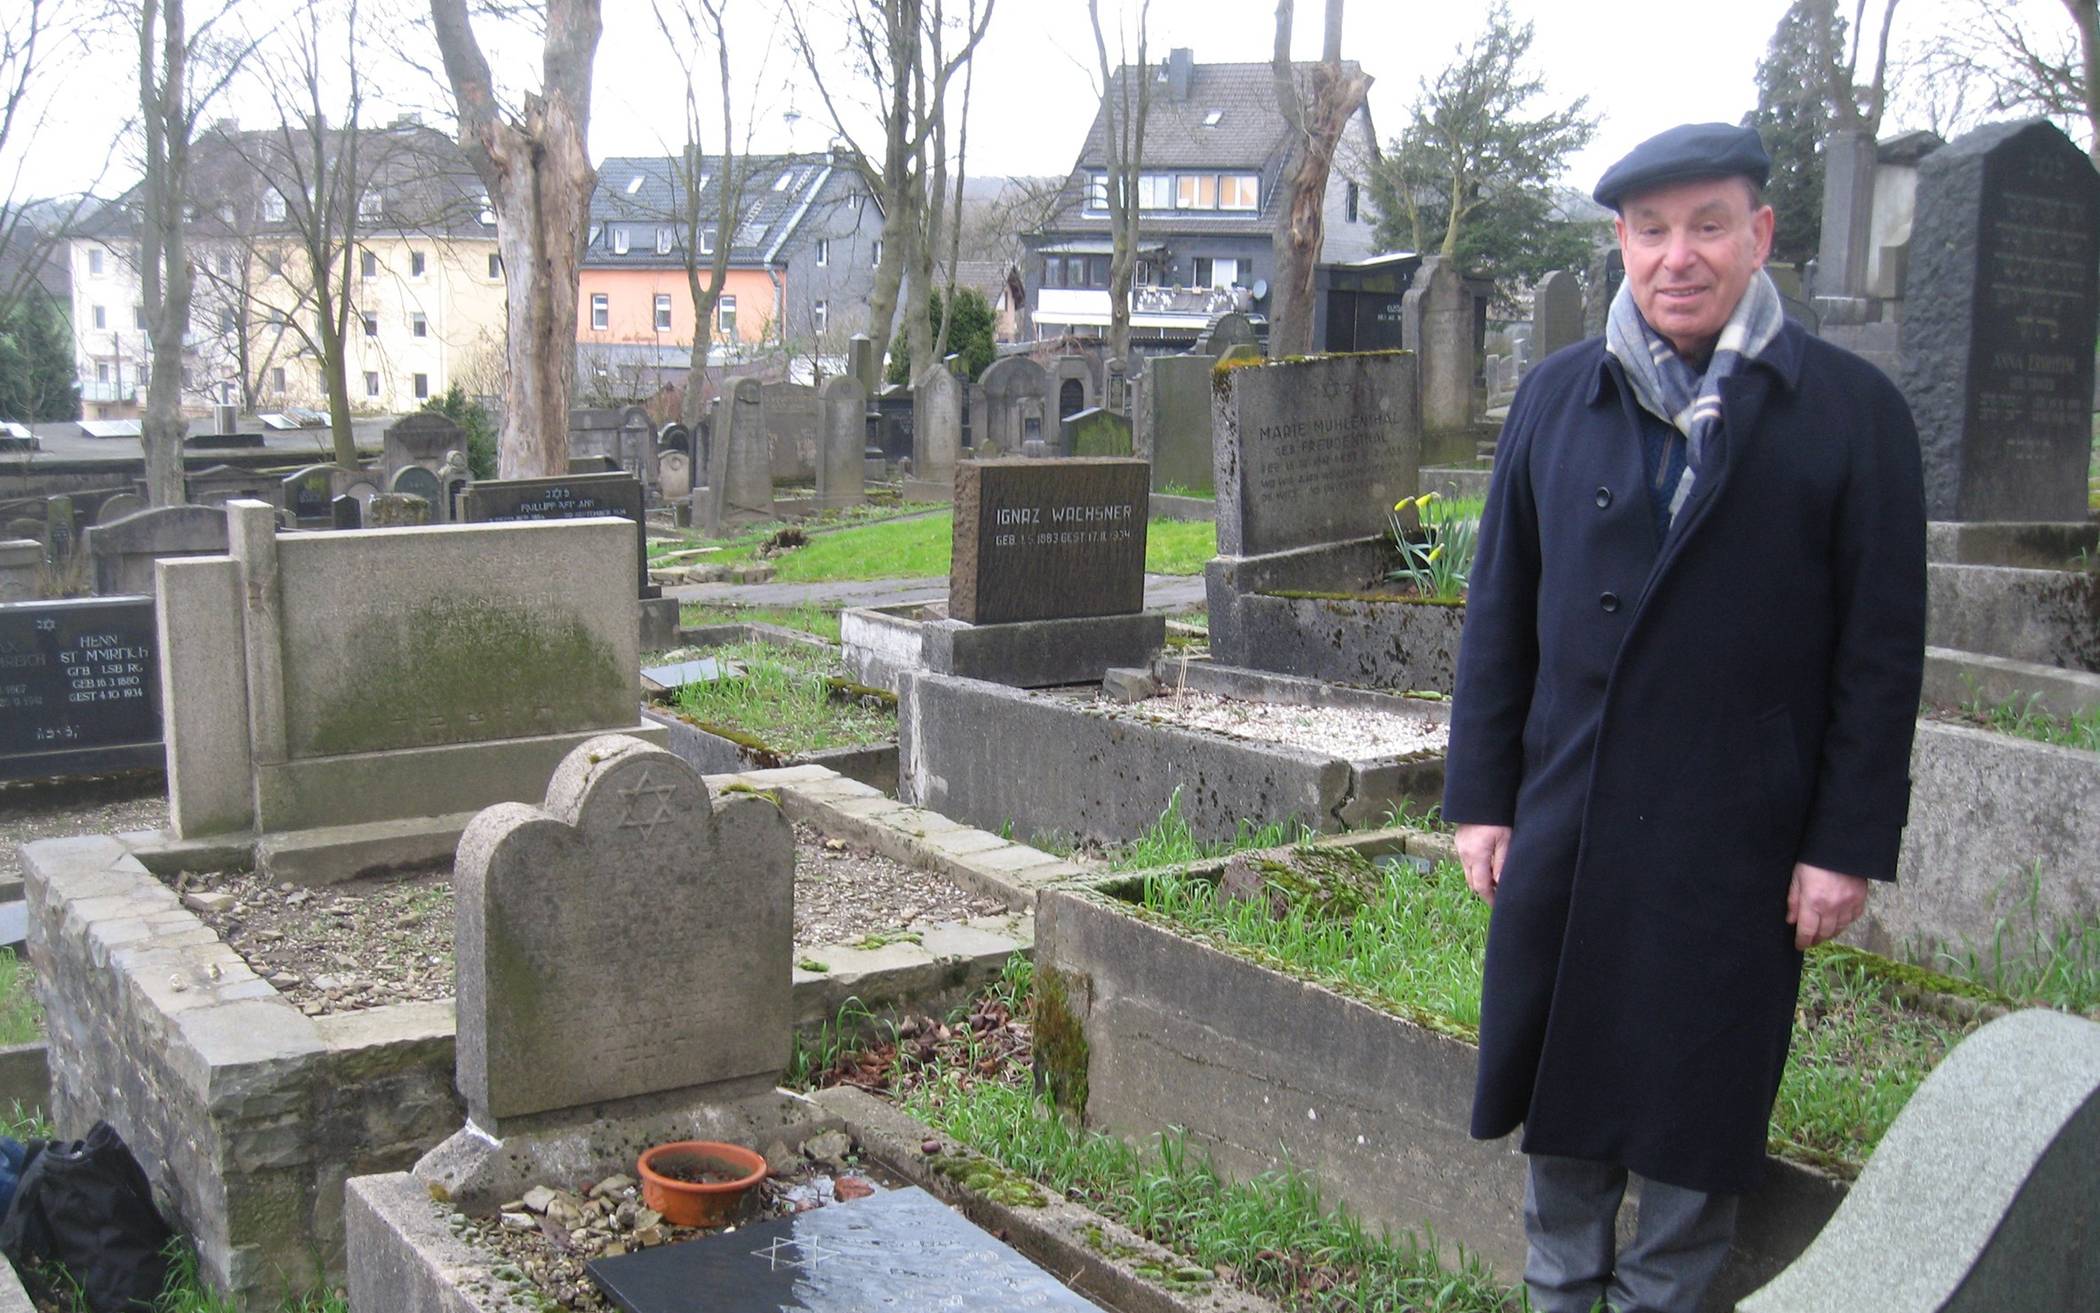  Dr. Stephen Lawson aus England, Neffe von Oswald Laufer, am Grab seines Onkels.  